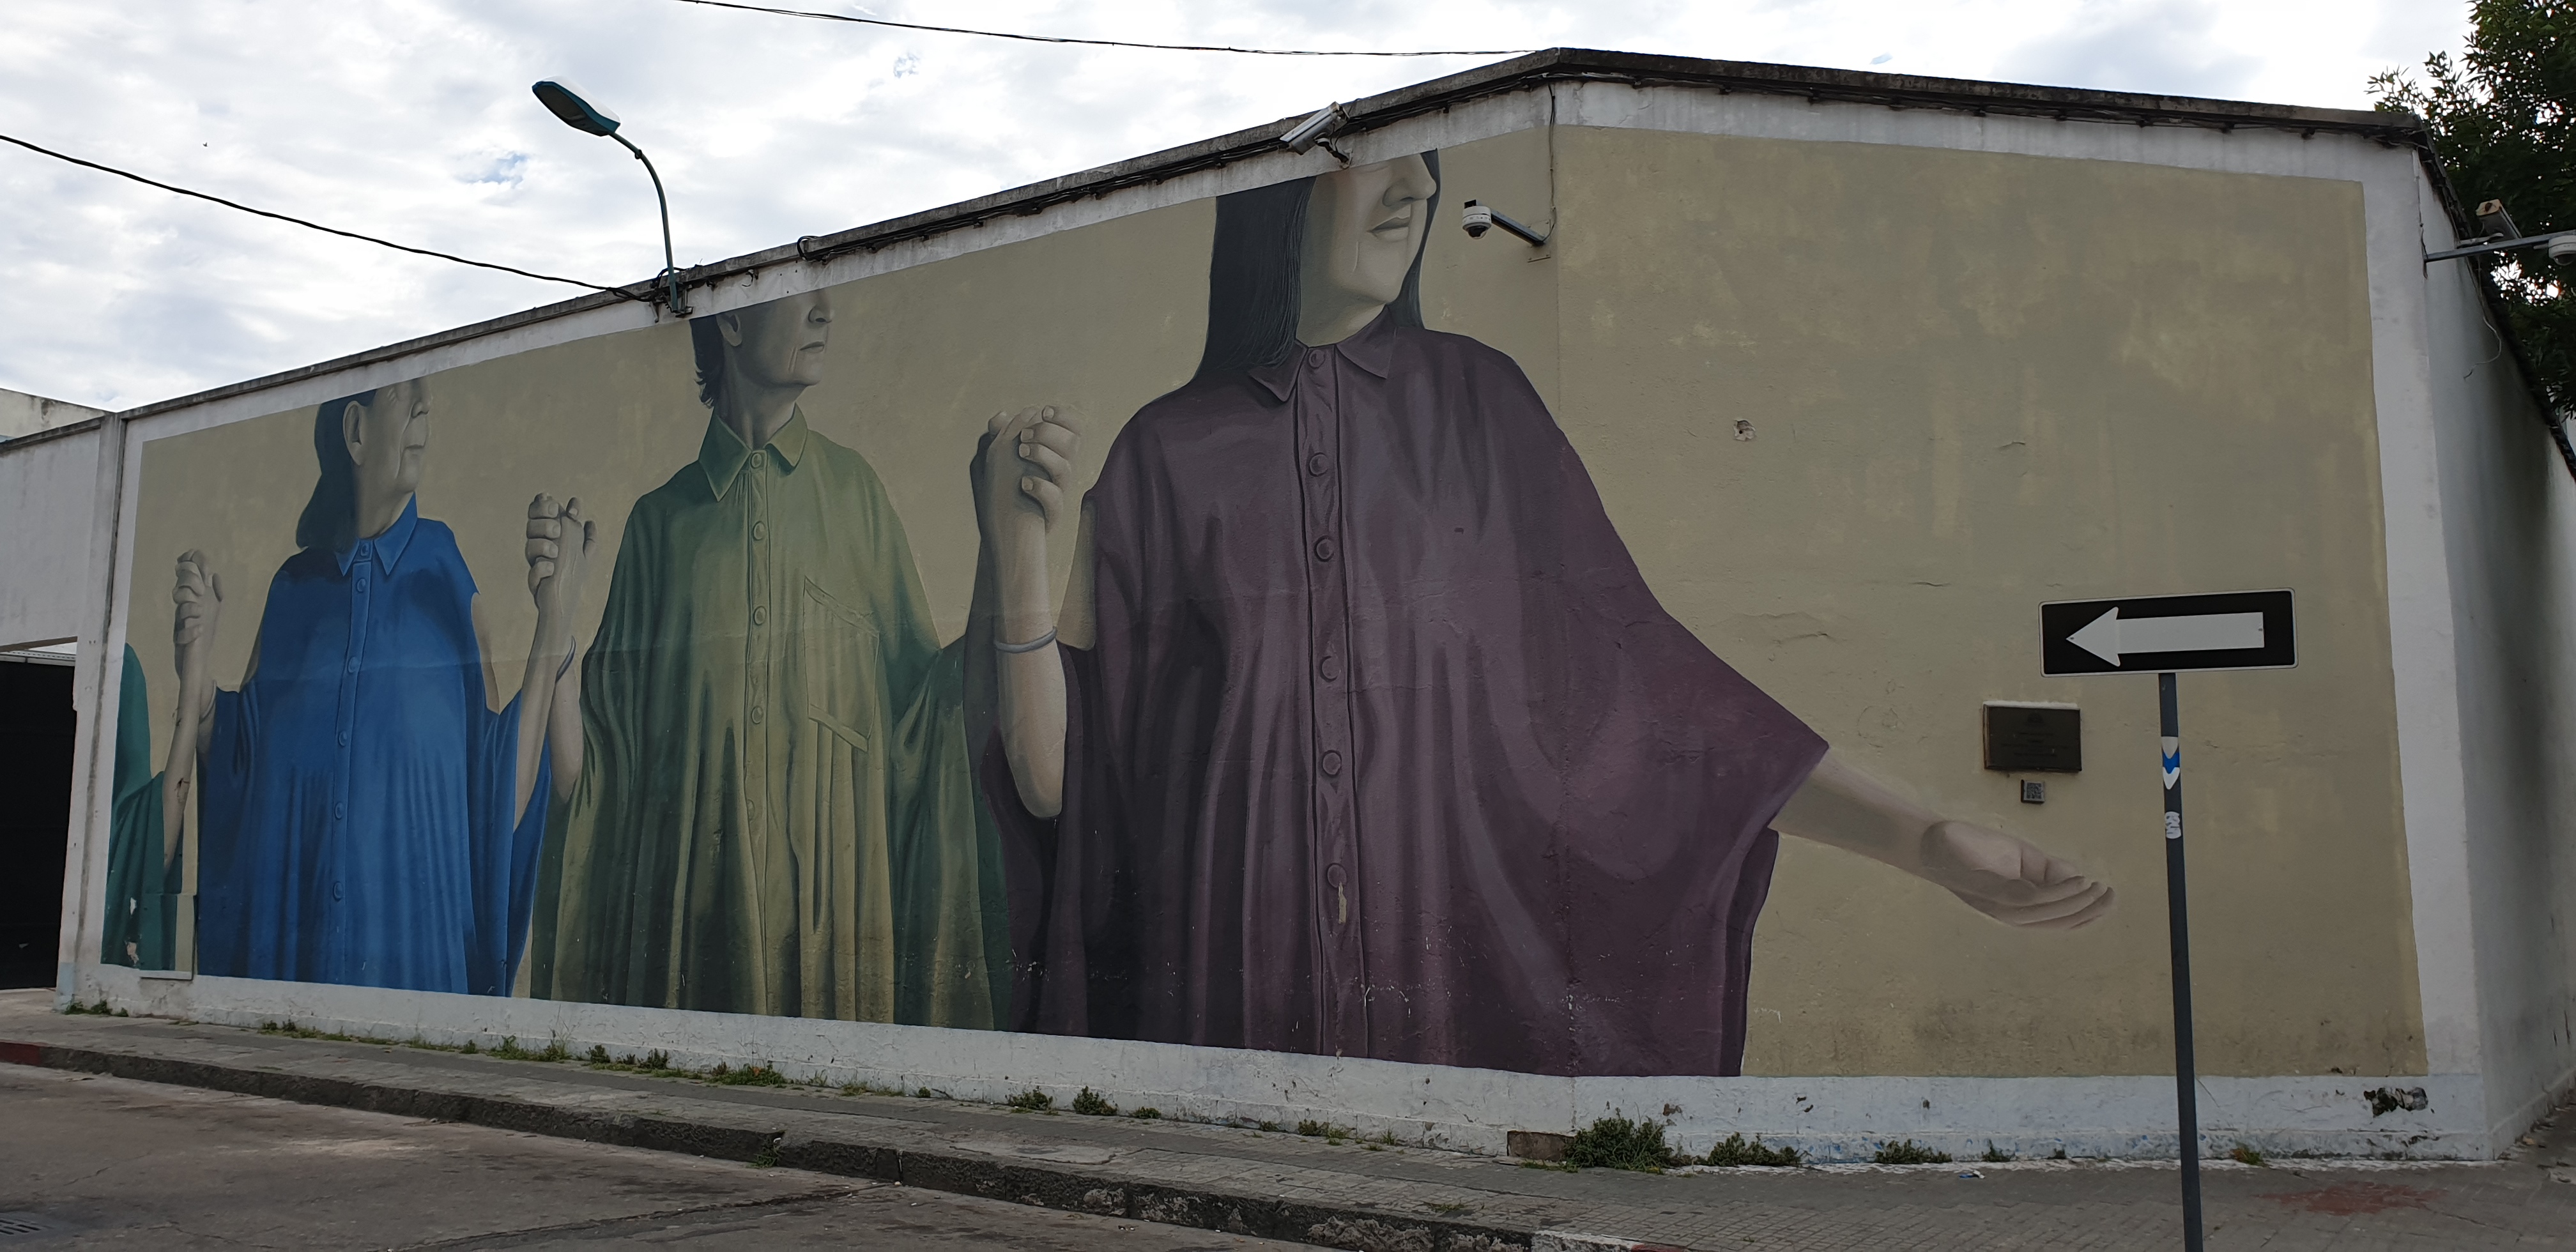 Mur réalisé par Fitz et Theic Licuado - Montevideo- Uruguay 2020 - ©nofakeinmynews.com